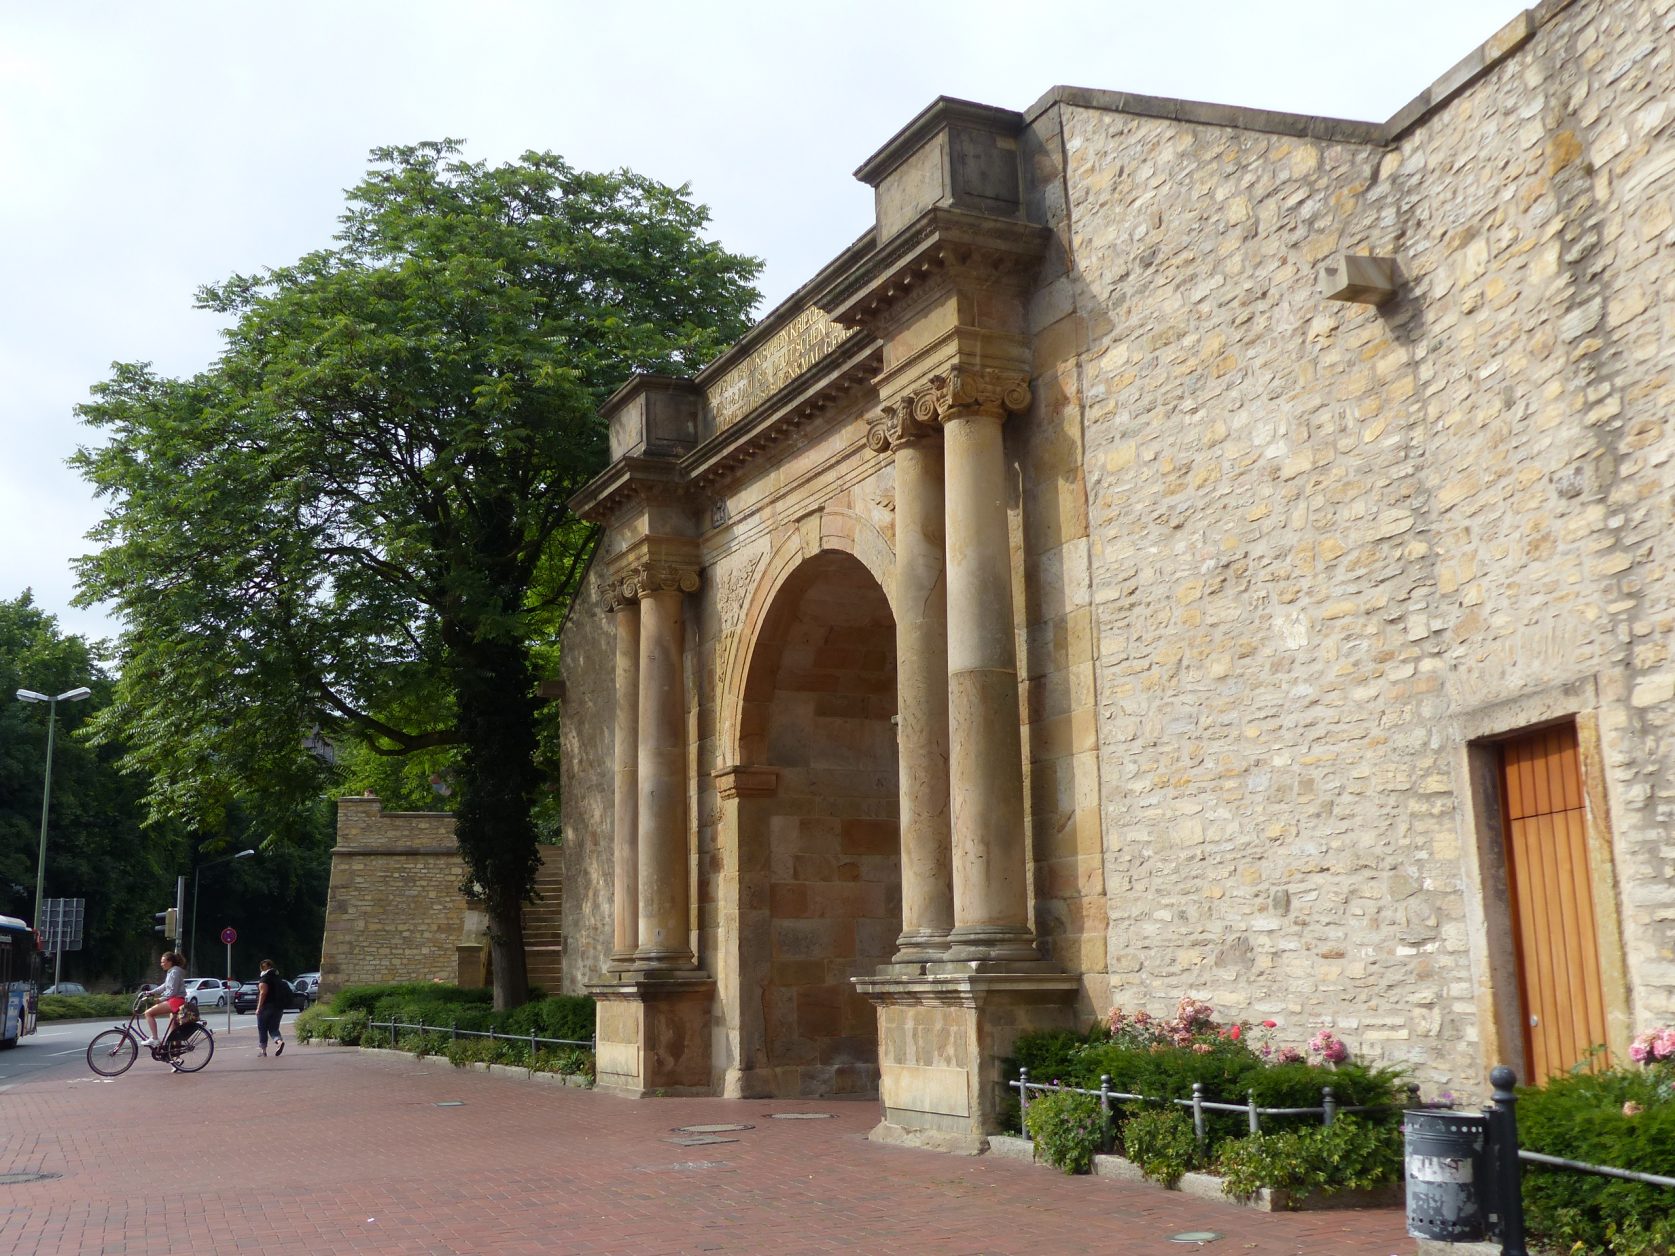 Das Waterloo-Tor ist ein Kriegerdenkmal in Osnabrück, das an die Schlacht bei Waterloo erinnert. Das Waterloo-Tor mit seinem umgebenden Bereich ist in Osnabrück als das Heger Tor bekannt, der Name „Waterloo-Tor“ wird lokal kaum benutzt. Wikipedia